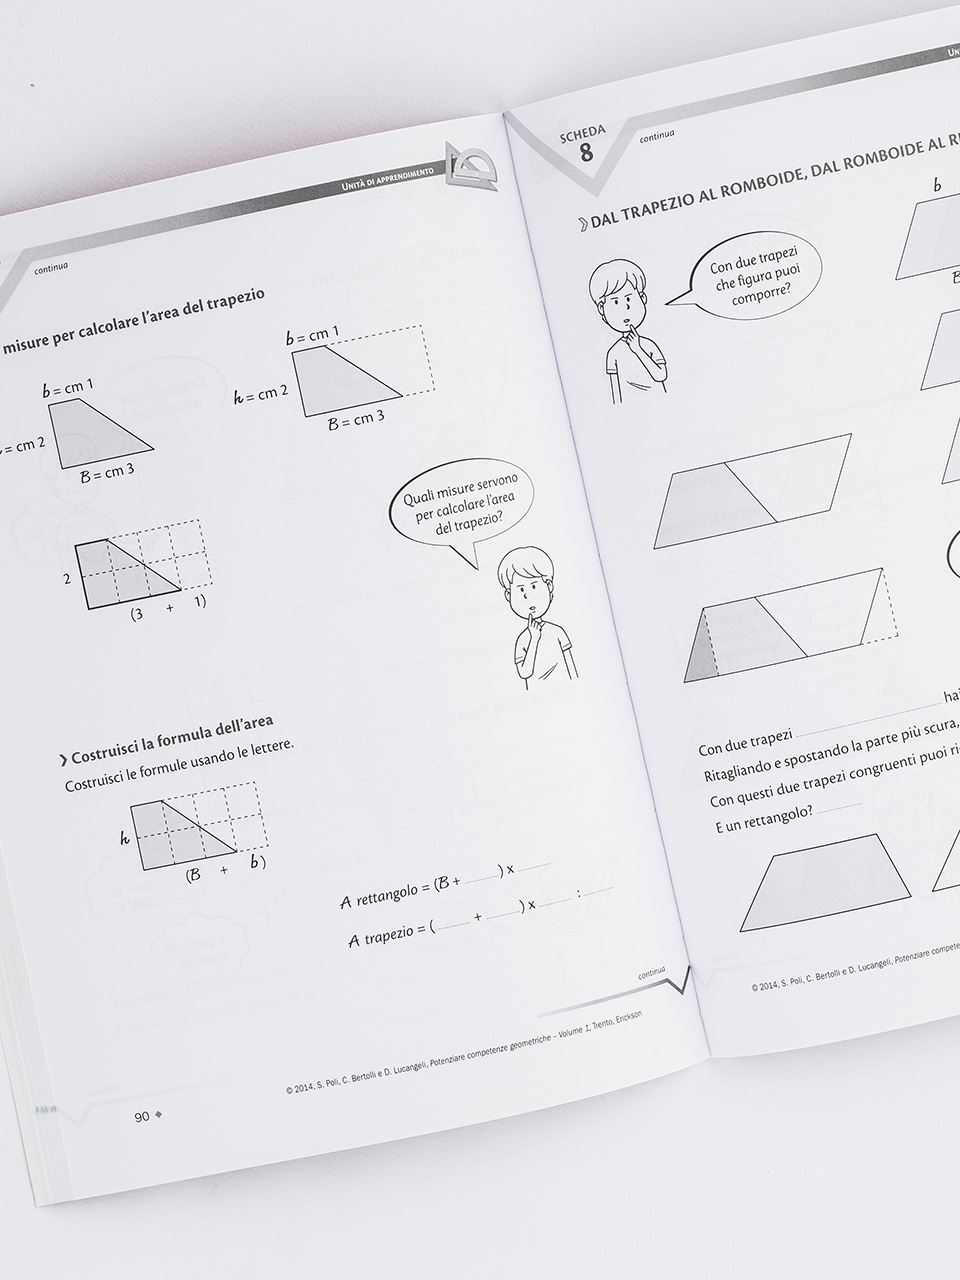 Potenziare competenze geometriche - Volume 1 - Libri - Erickson 2